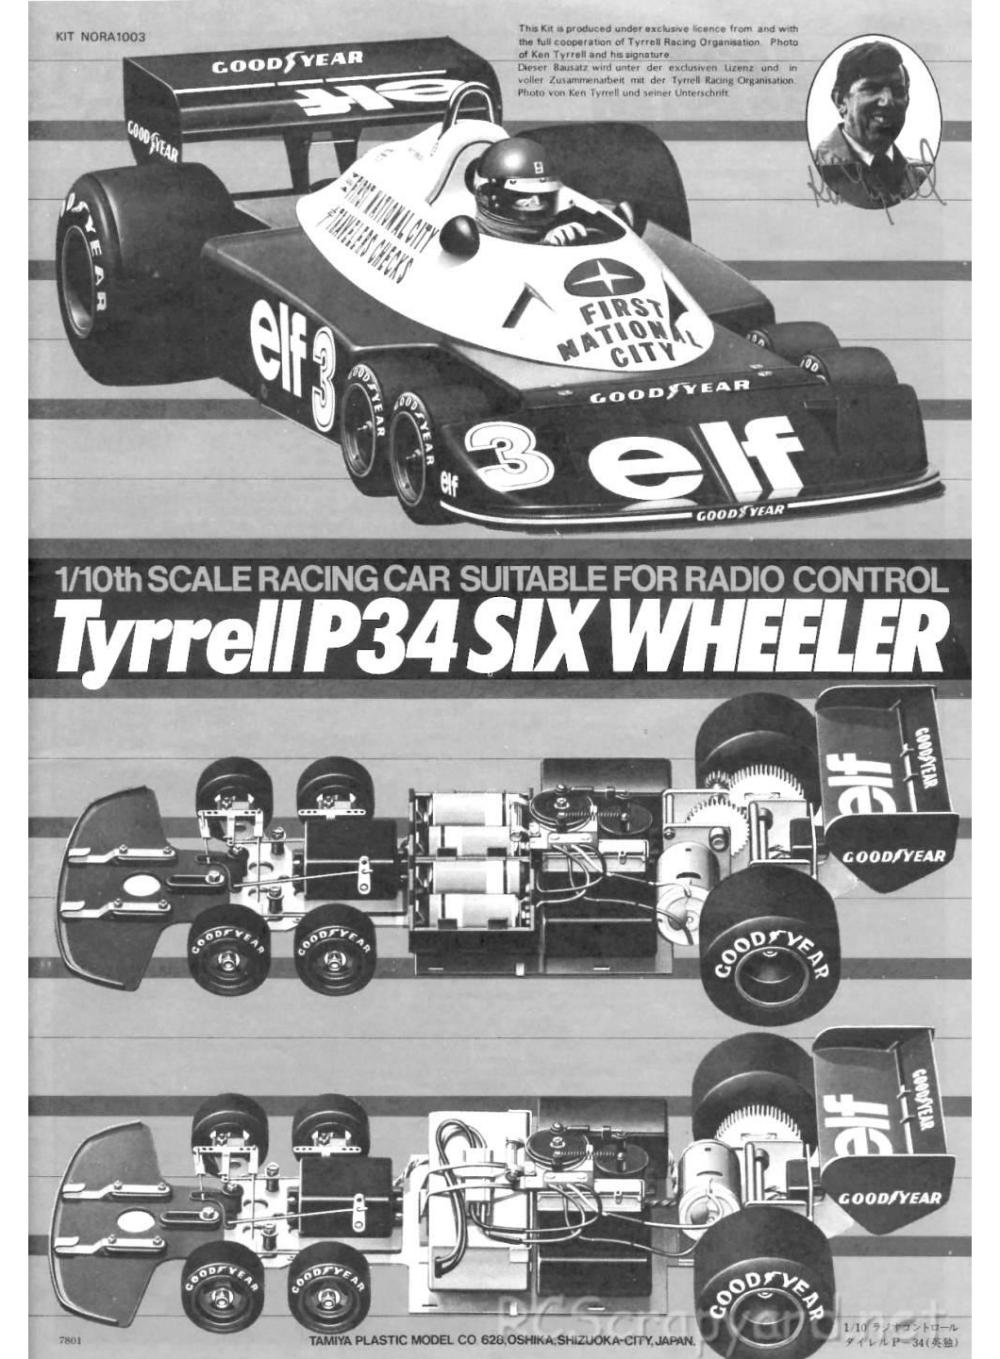 Tamiya - Tyrrell P34 Six Wheeler - 58003 - Manual